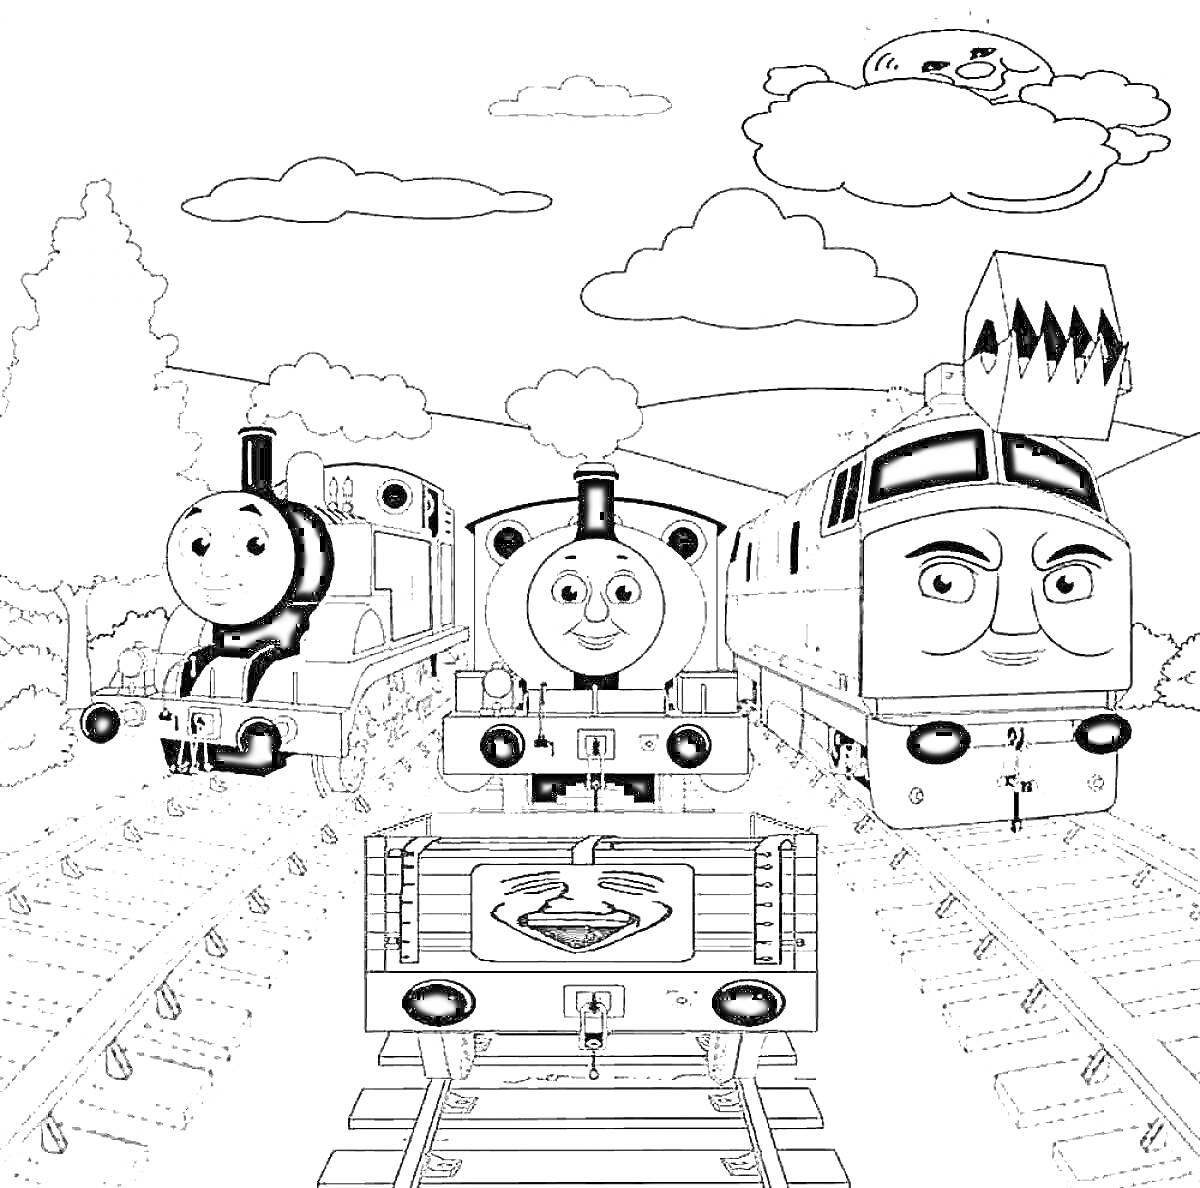 Трое паровозиков Томас на железнодорожных путях с улыбающимся вагоном и улыбающимся облаком